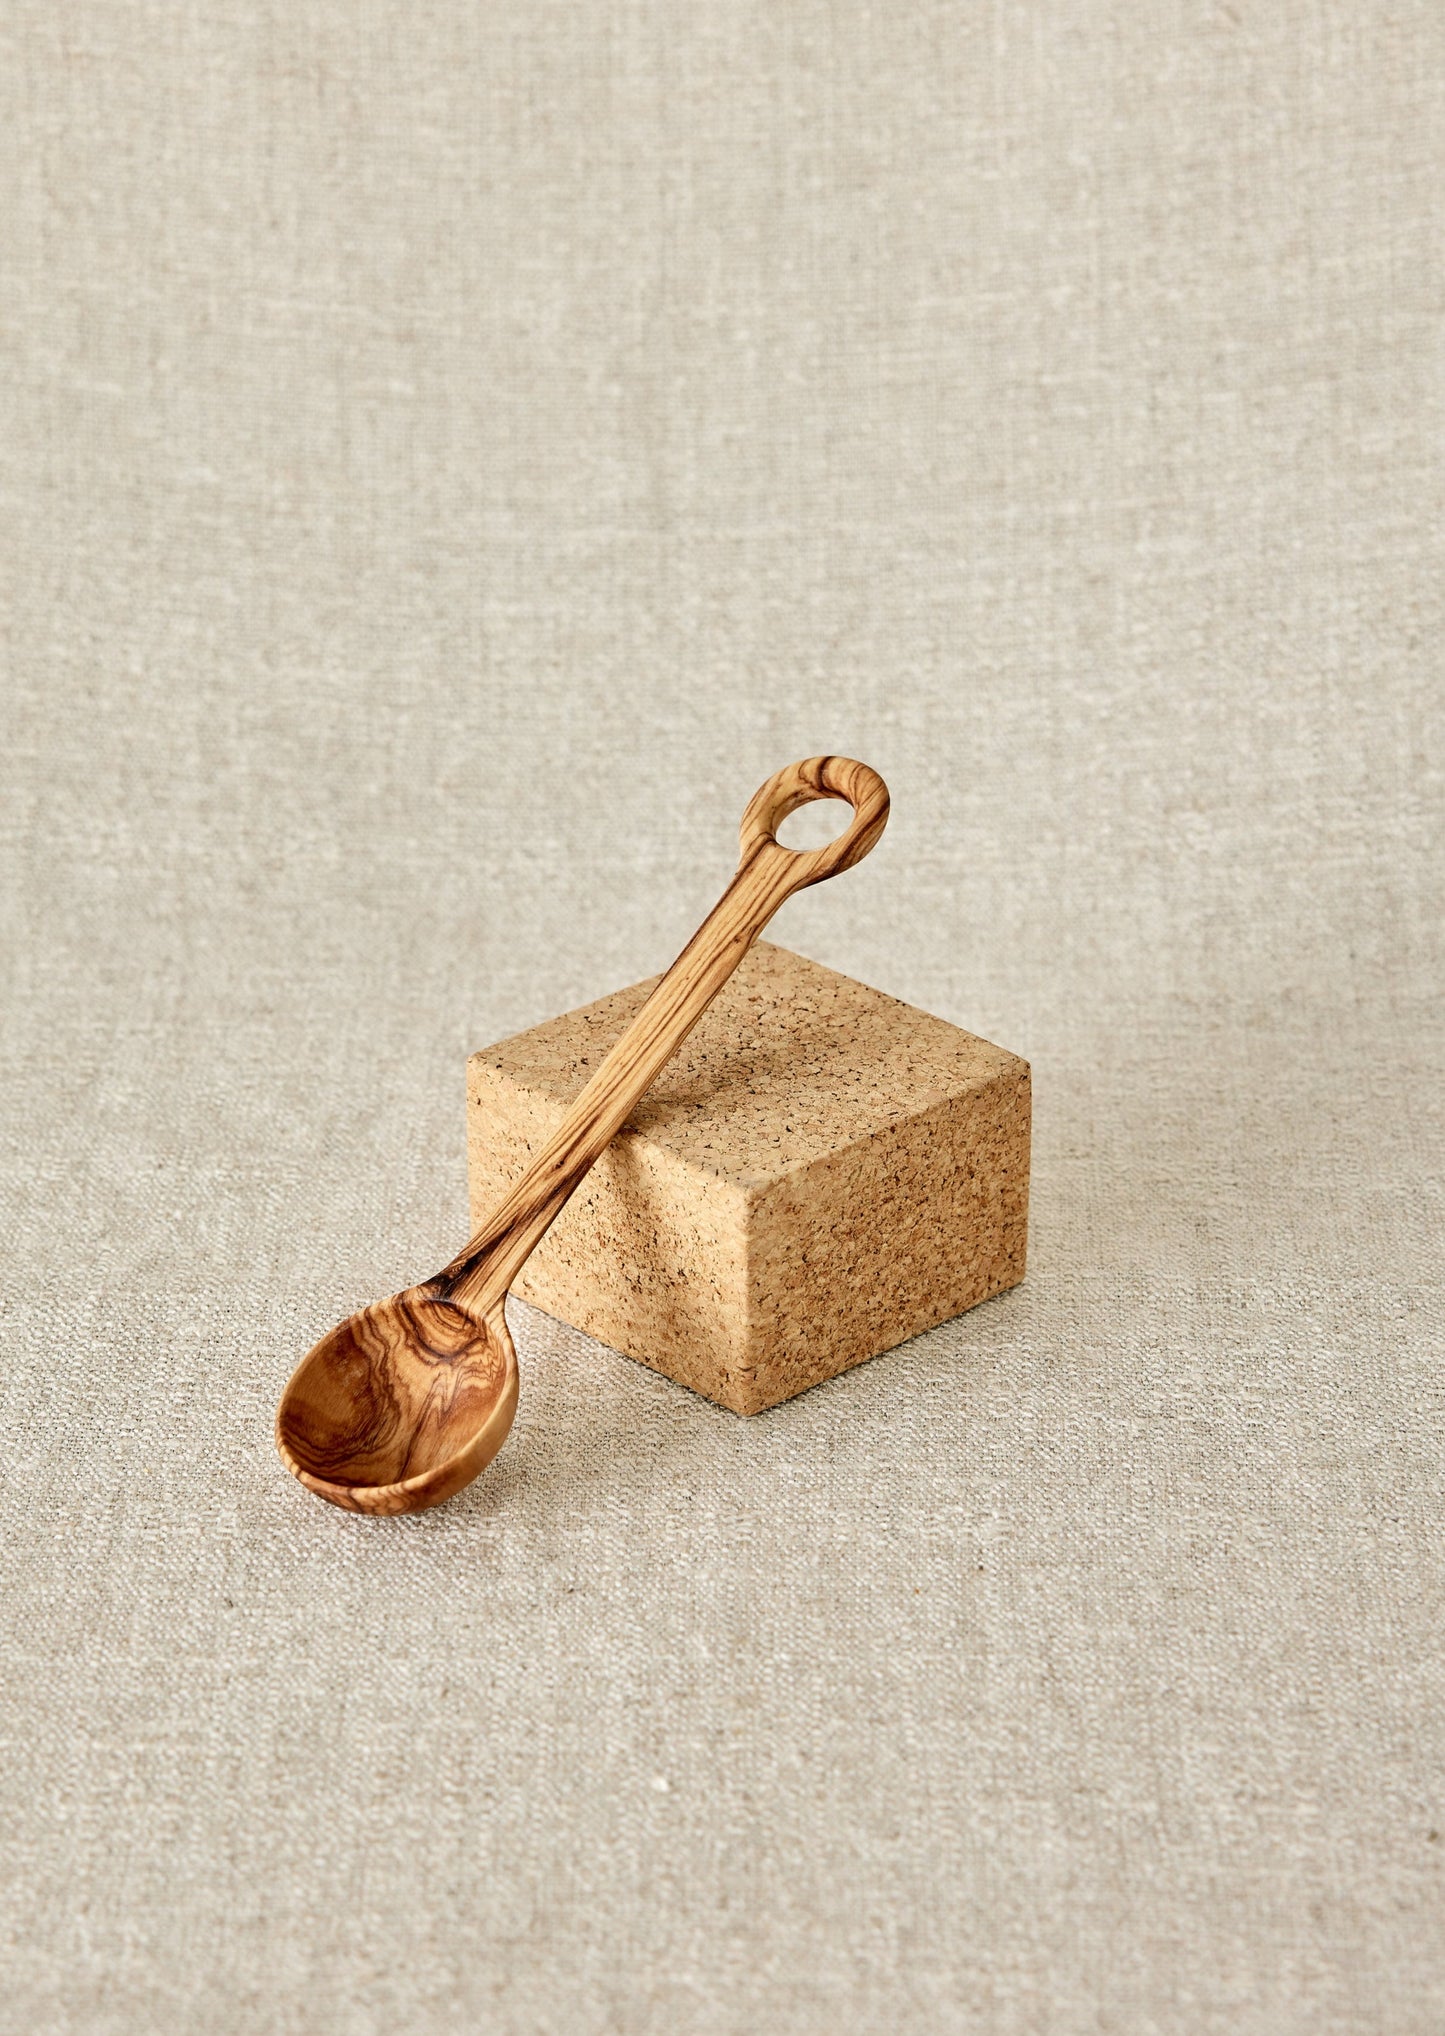 Handmade wooden salt & coffee scoop